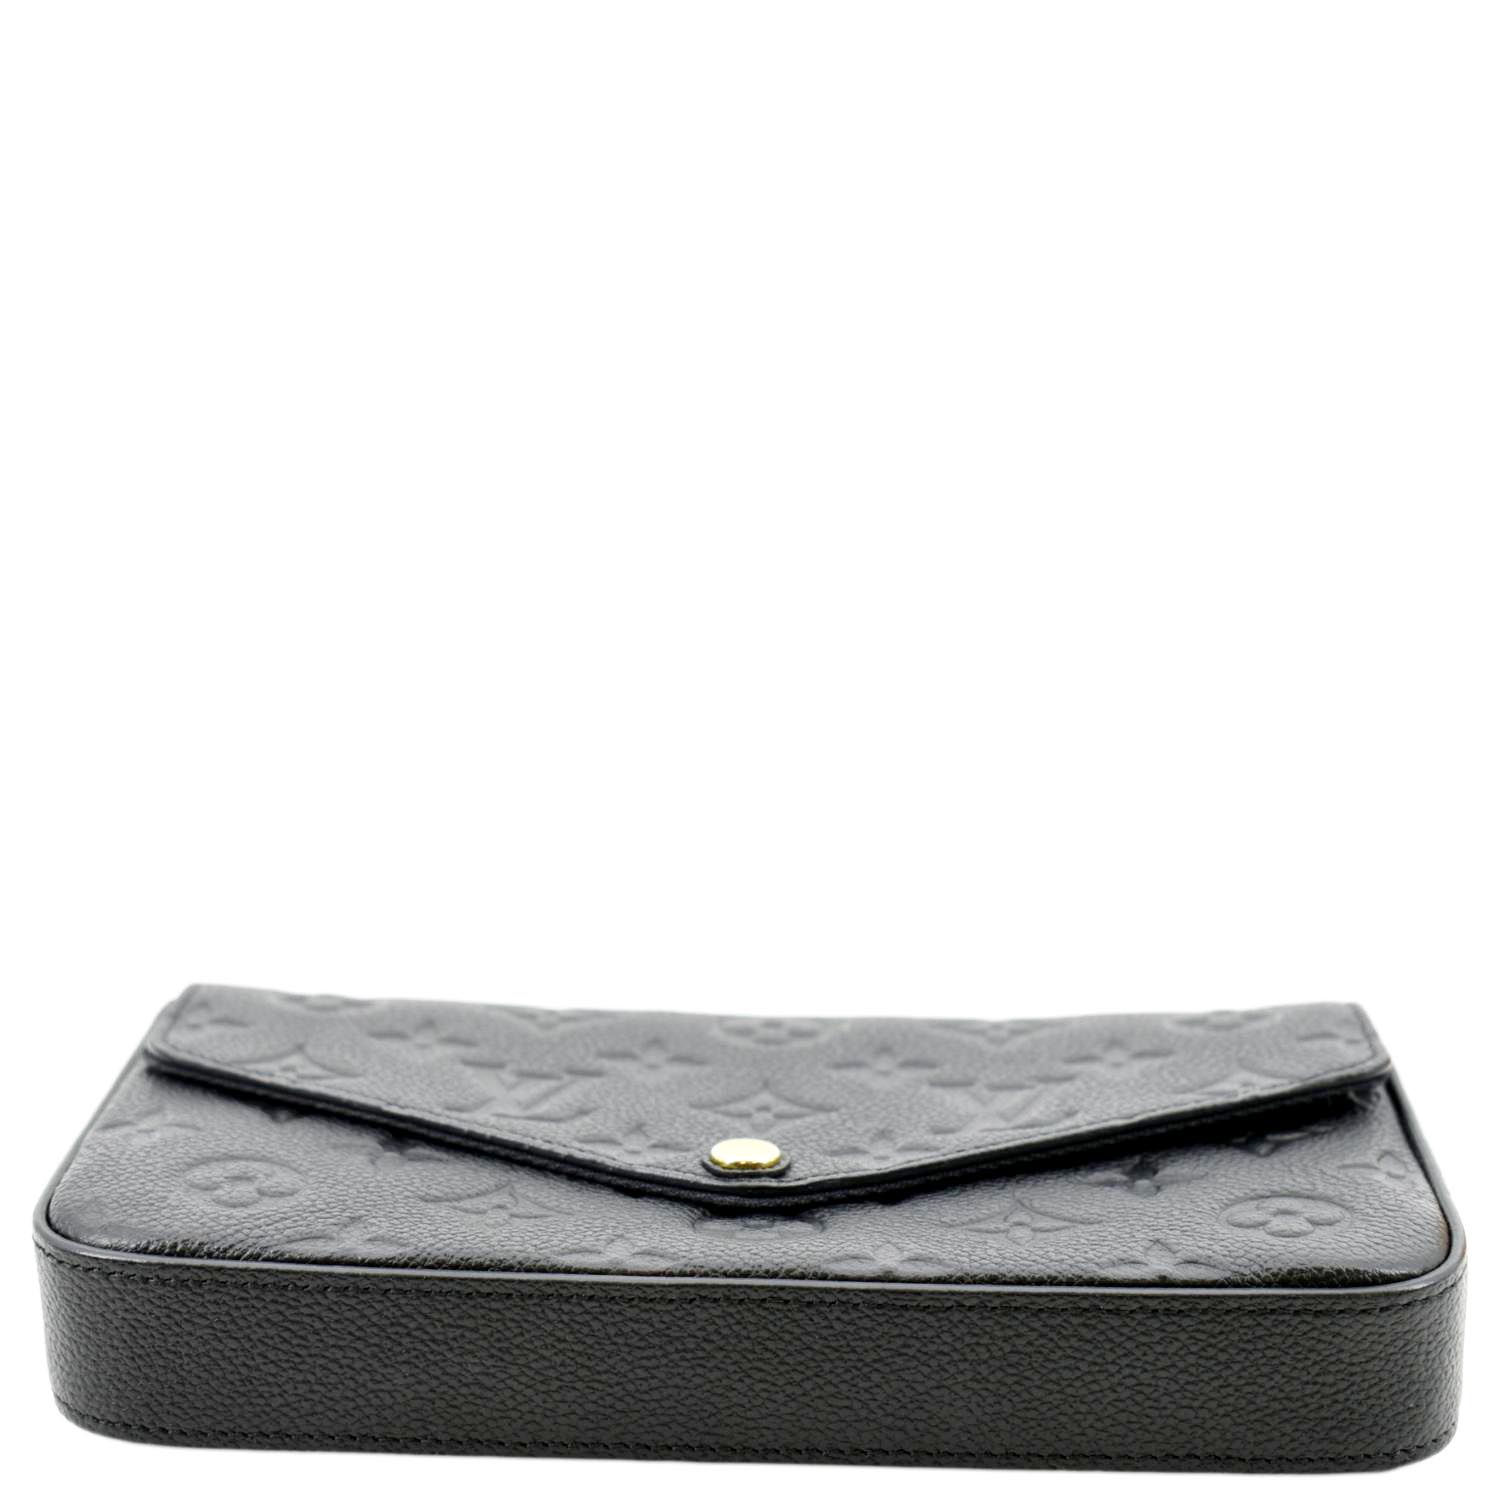 Shop Louis Vuitton MONOGRAM Félicie pochette (M61276) by design